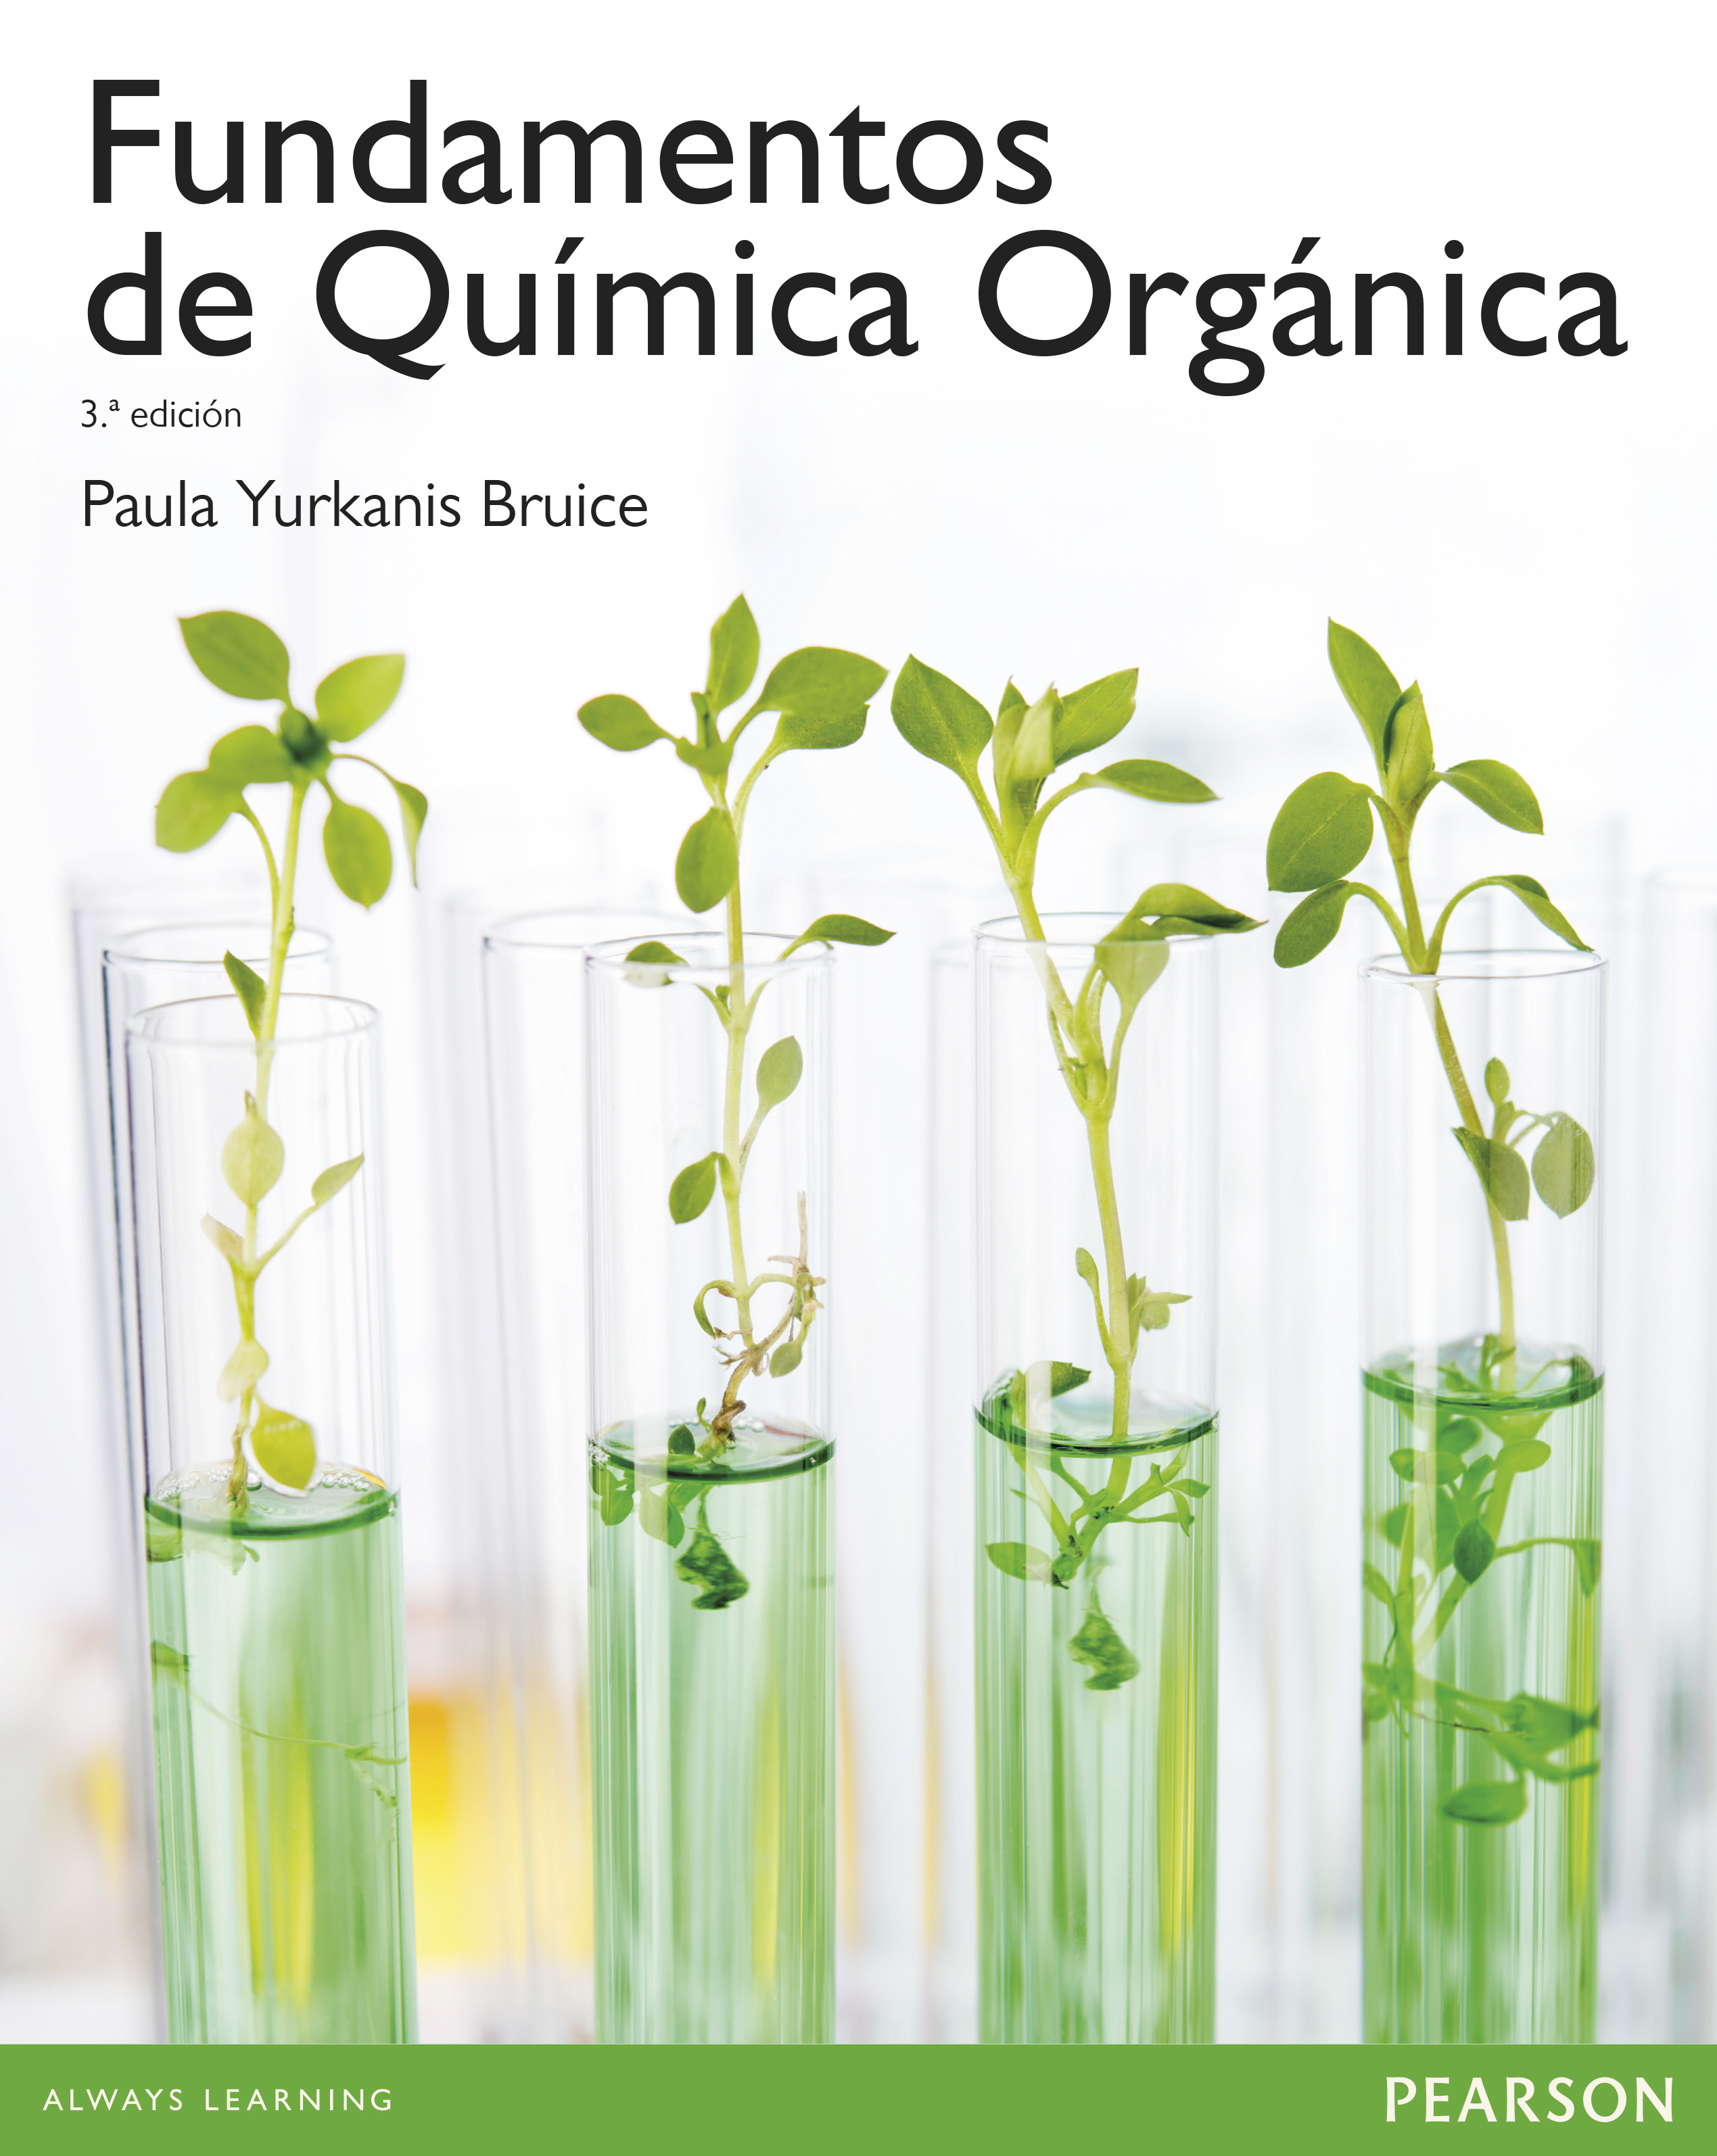 libros quimica organica pdf gratis